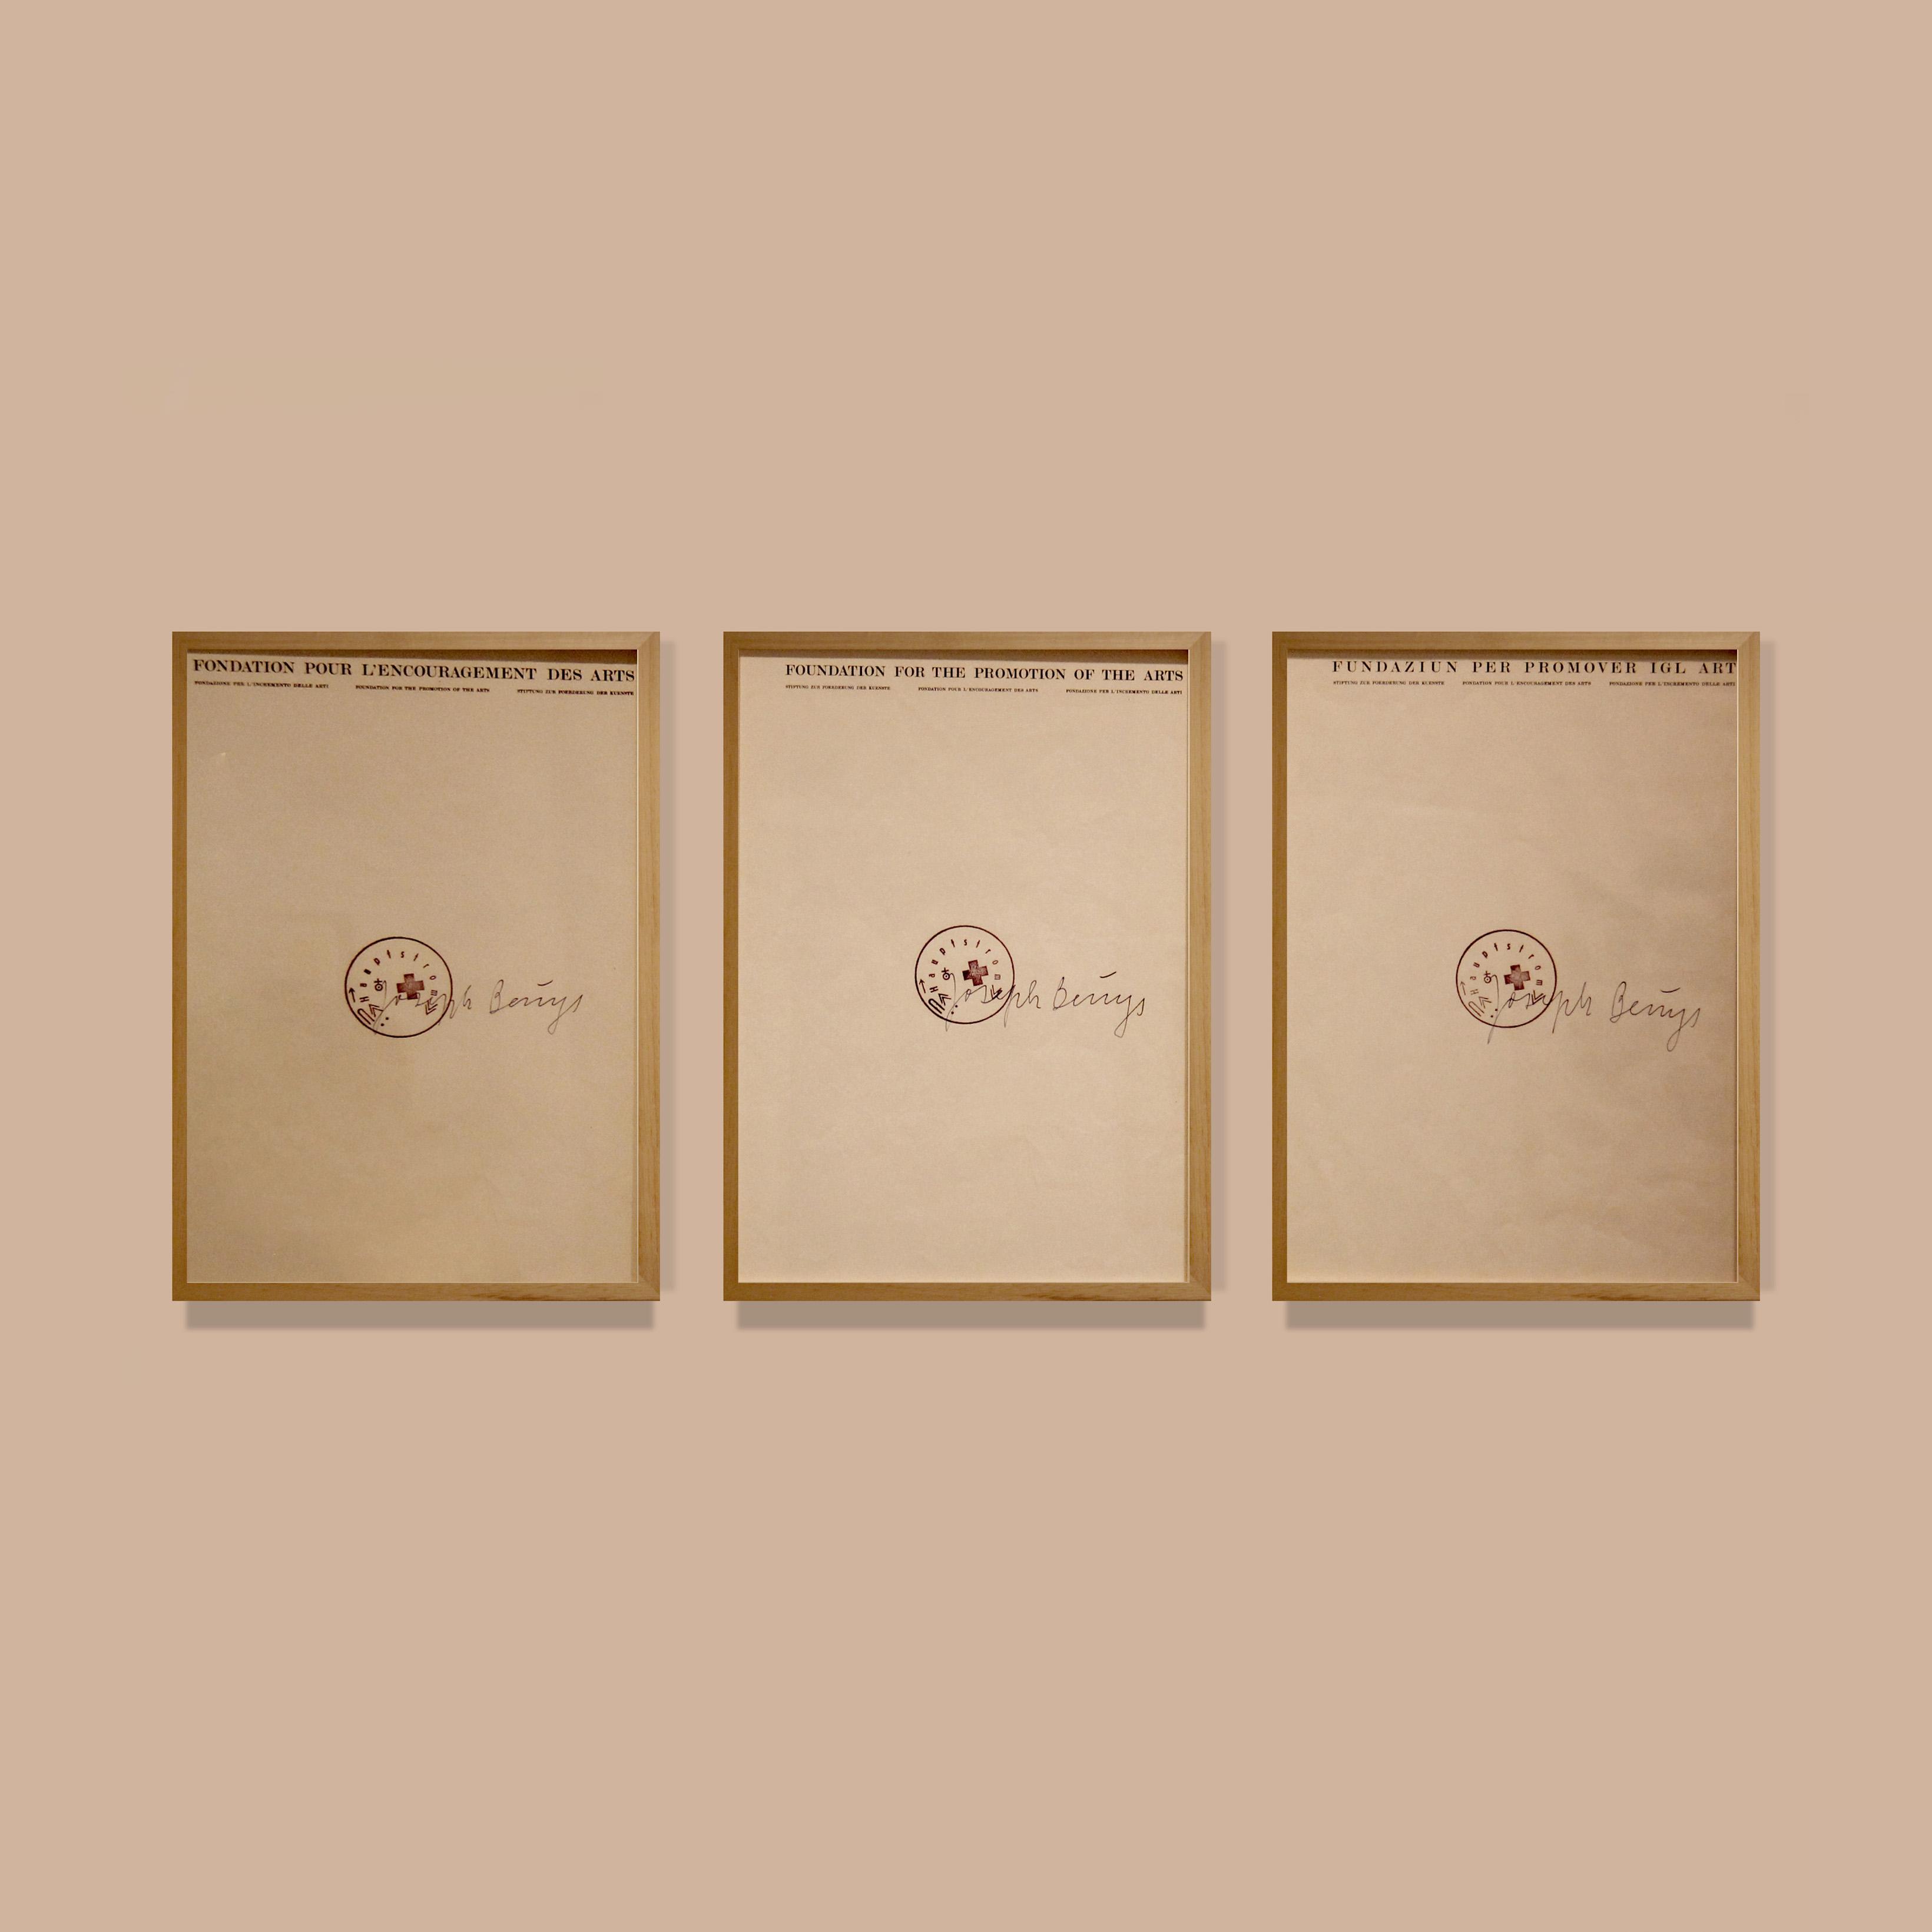 Tre Letter, 1973
30,5 x 21,9 cm